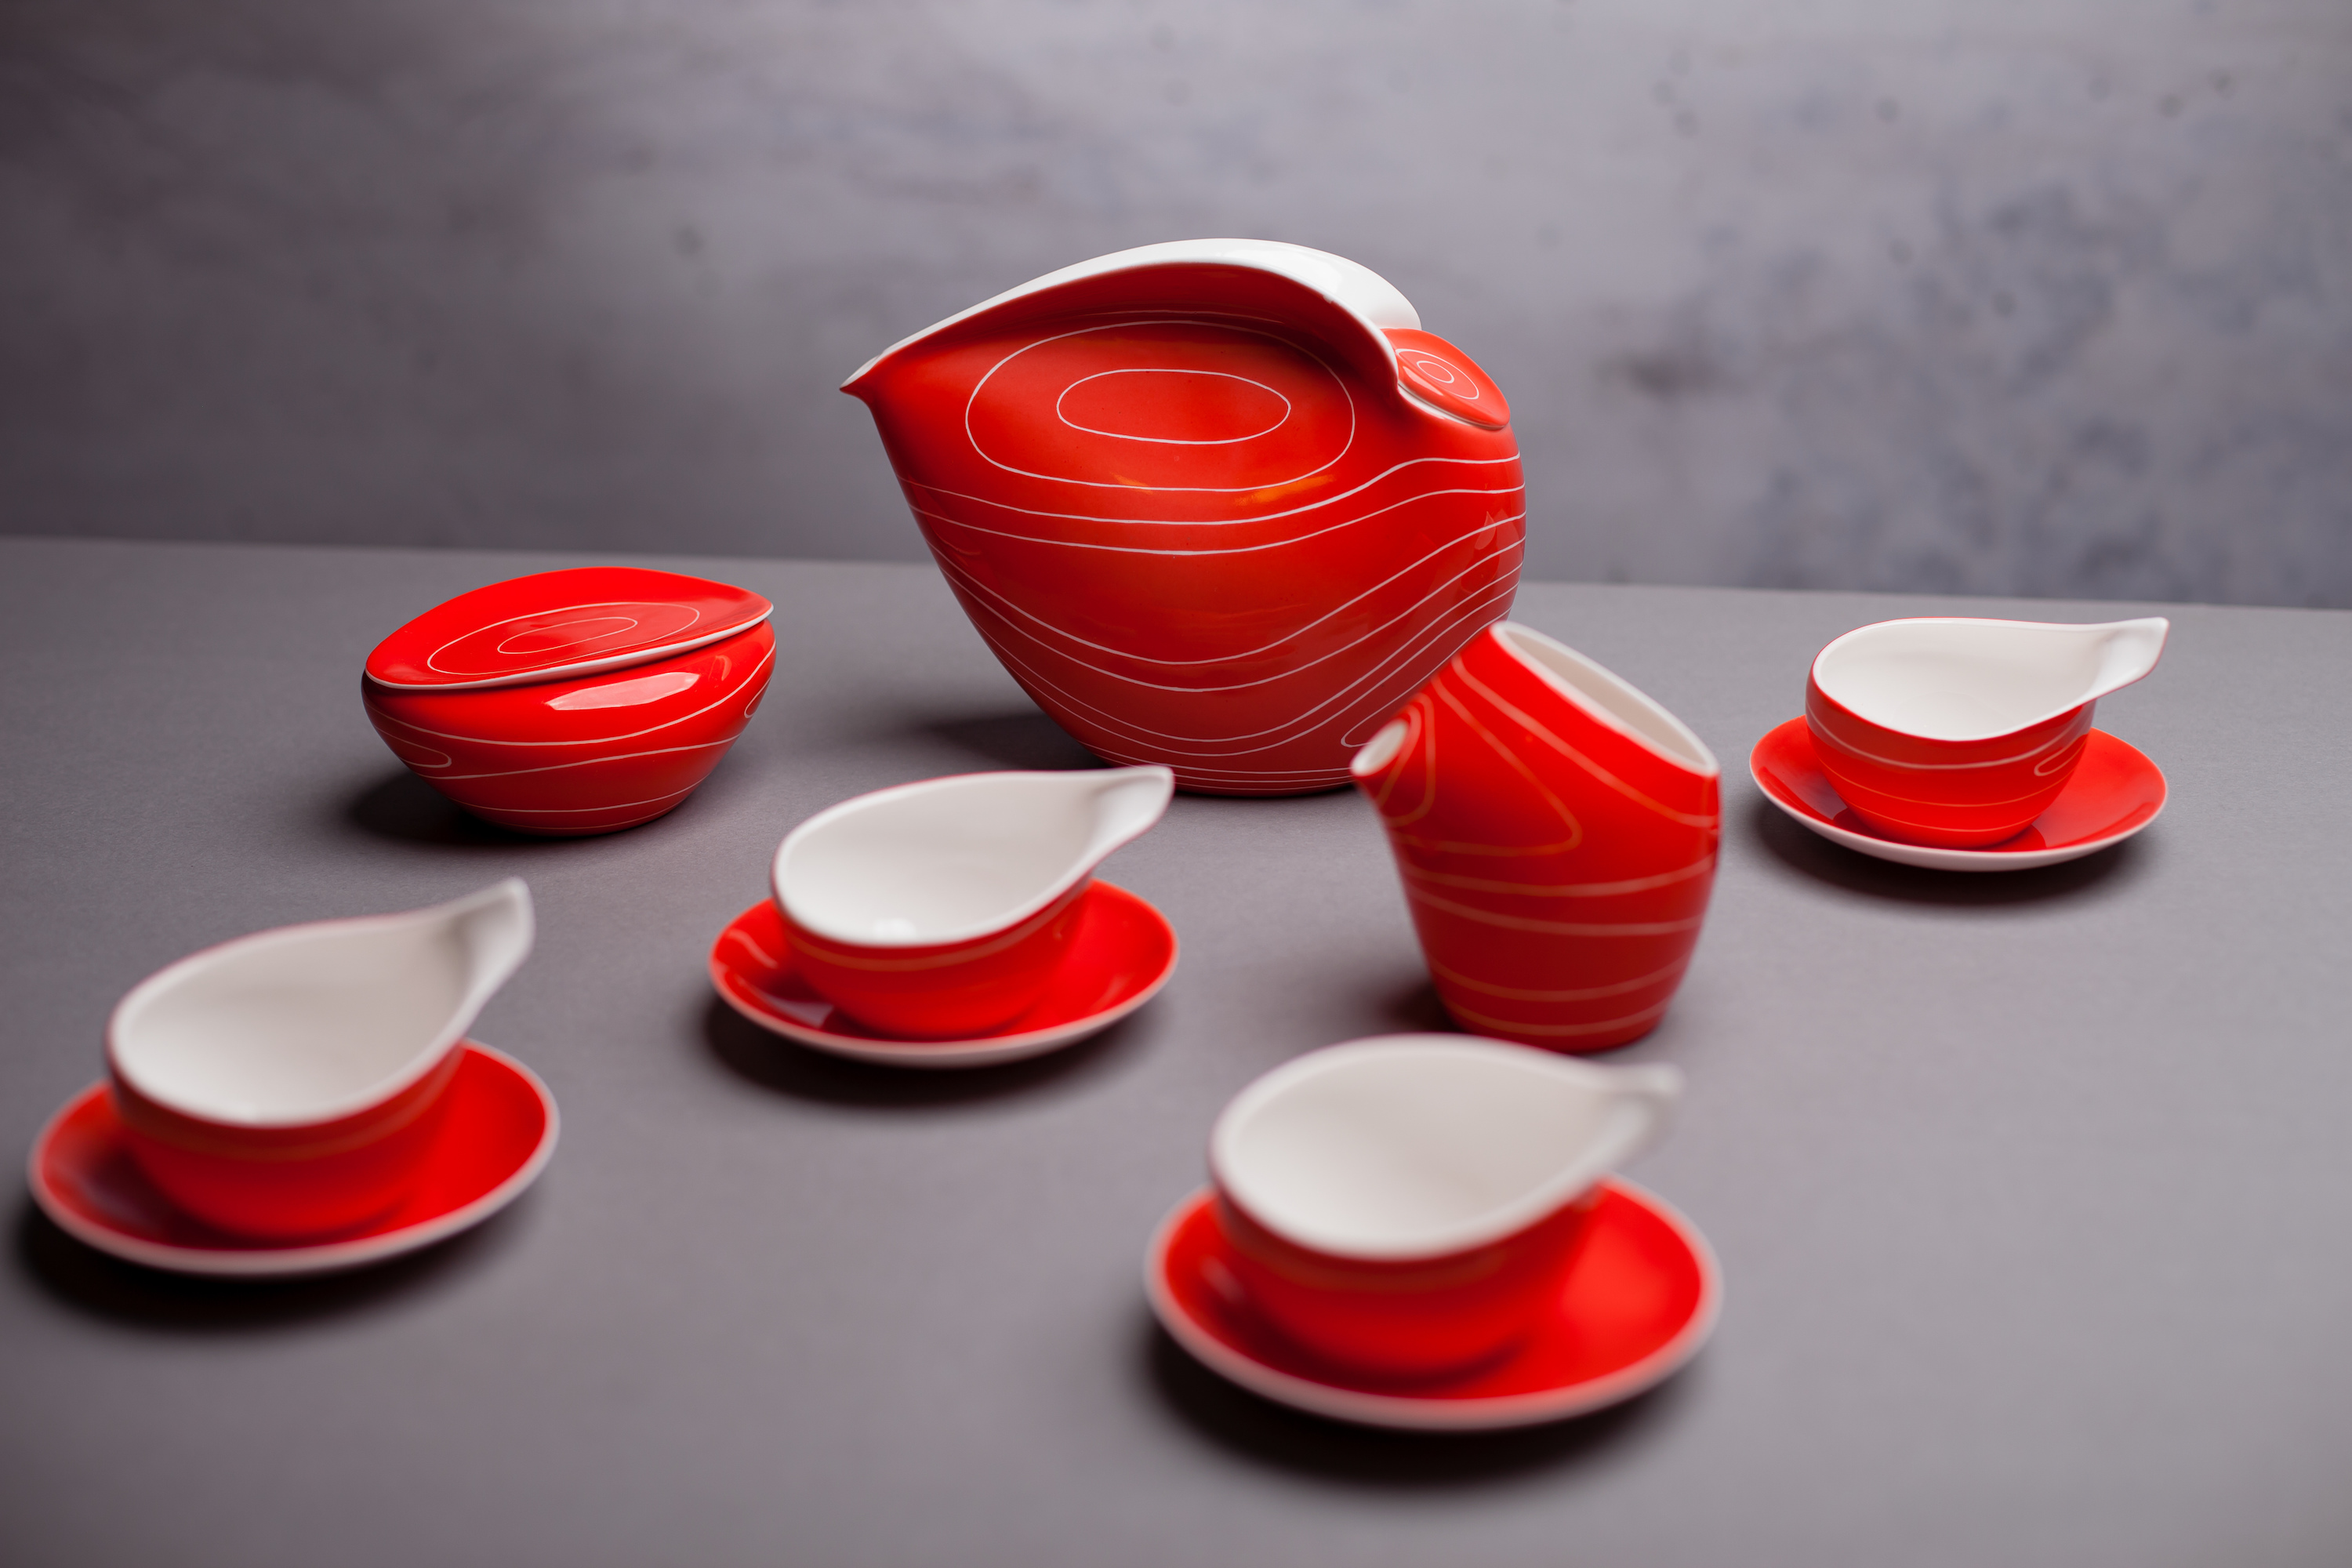 Dorota porcelain set by Lubomir Tomaszewski - 1961 Art and Design Lubomir Tomaszewski Foundation